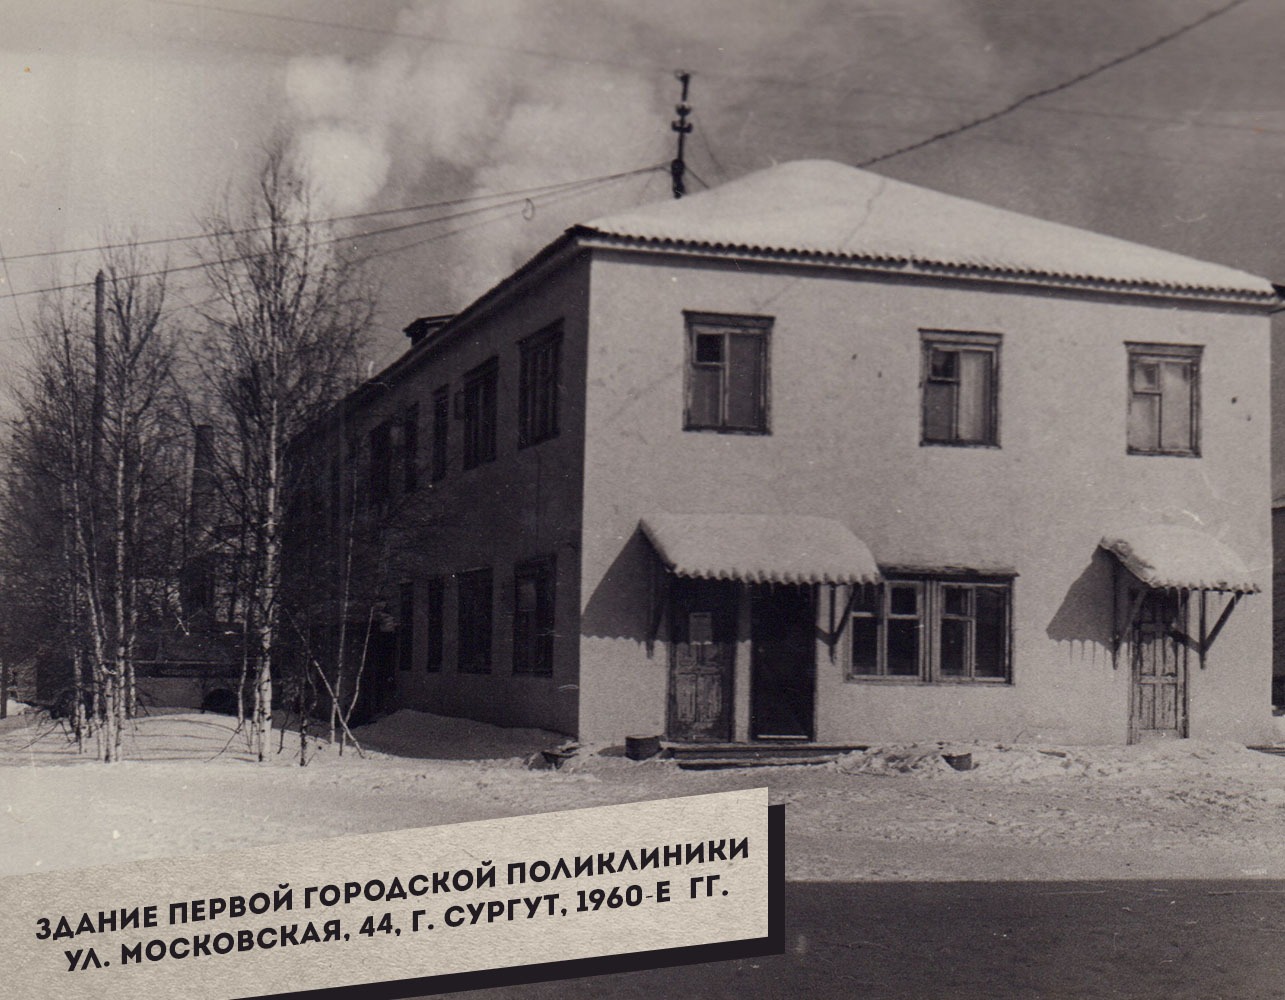 1.-Zdanie-pervoy-gorodskoy-polikliniki-po-ul.-Moskovskaya-44.-Surgut-1960-e-gg._